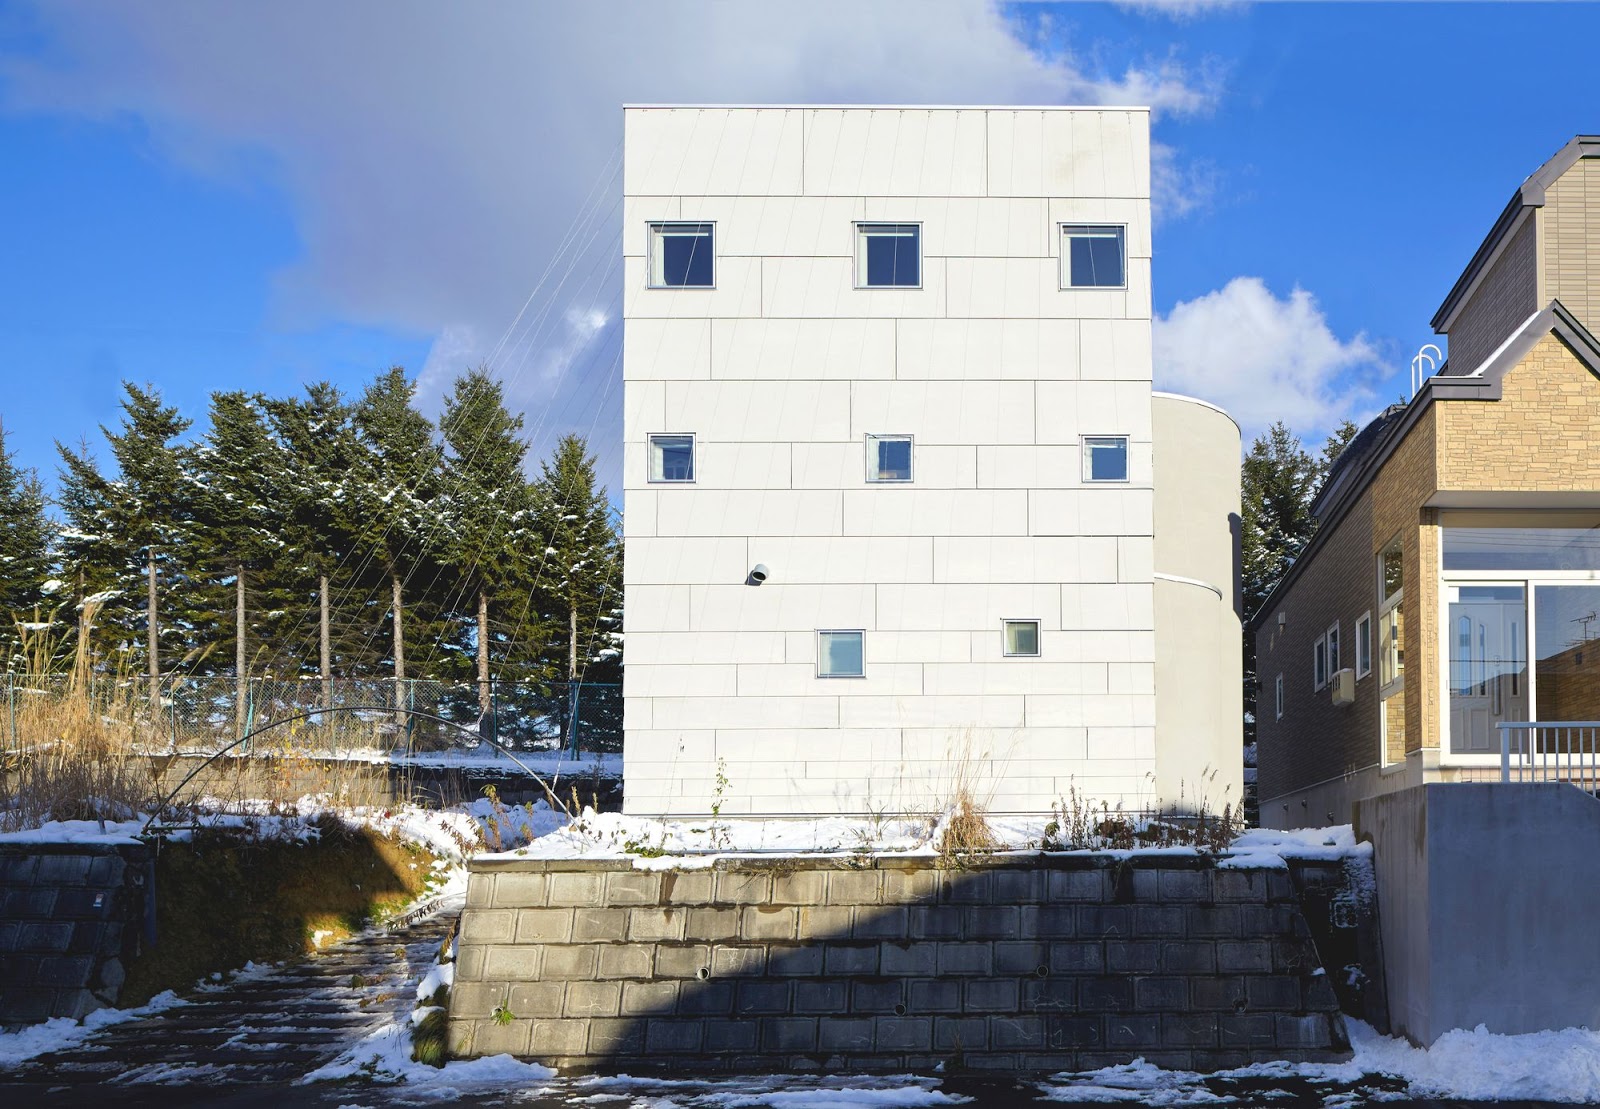 Case House / Jun Igarashi Architects